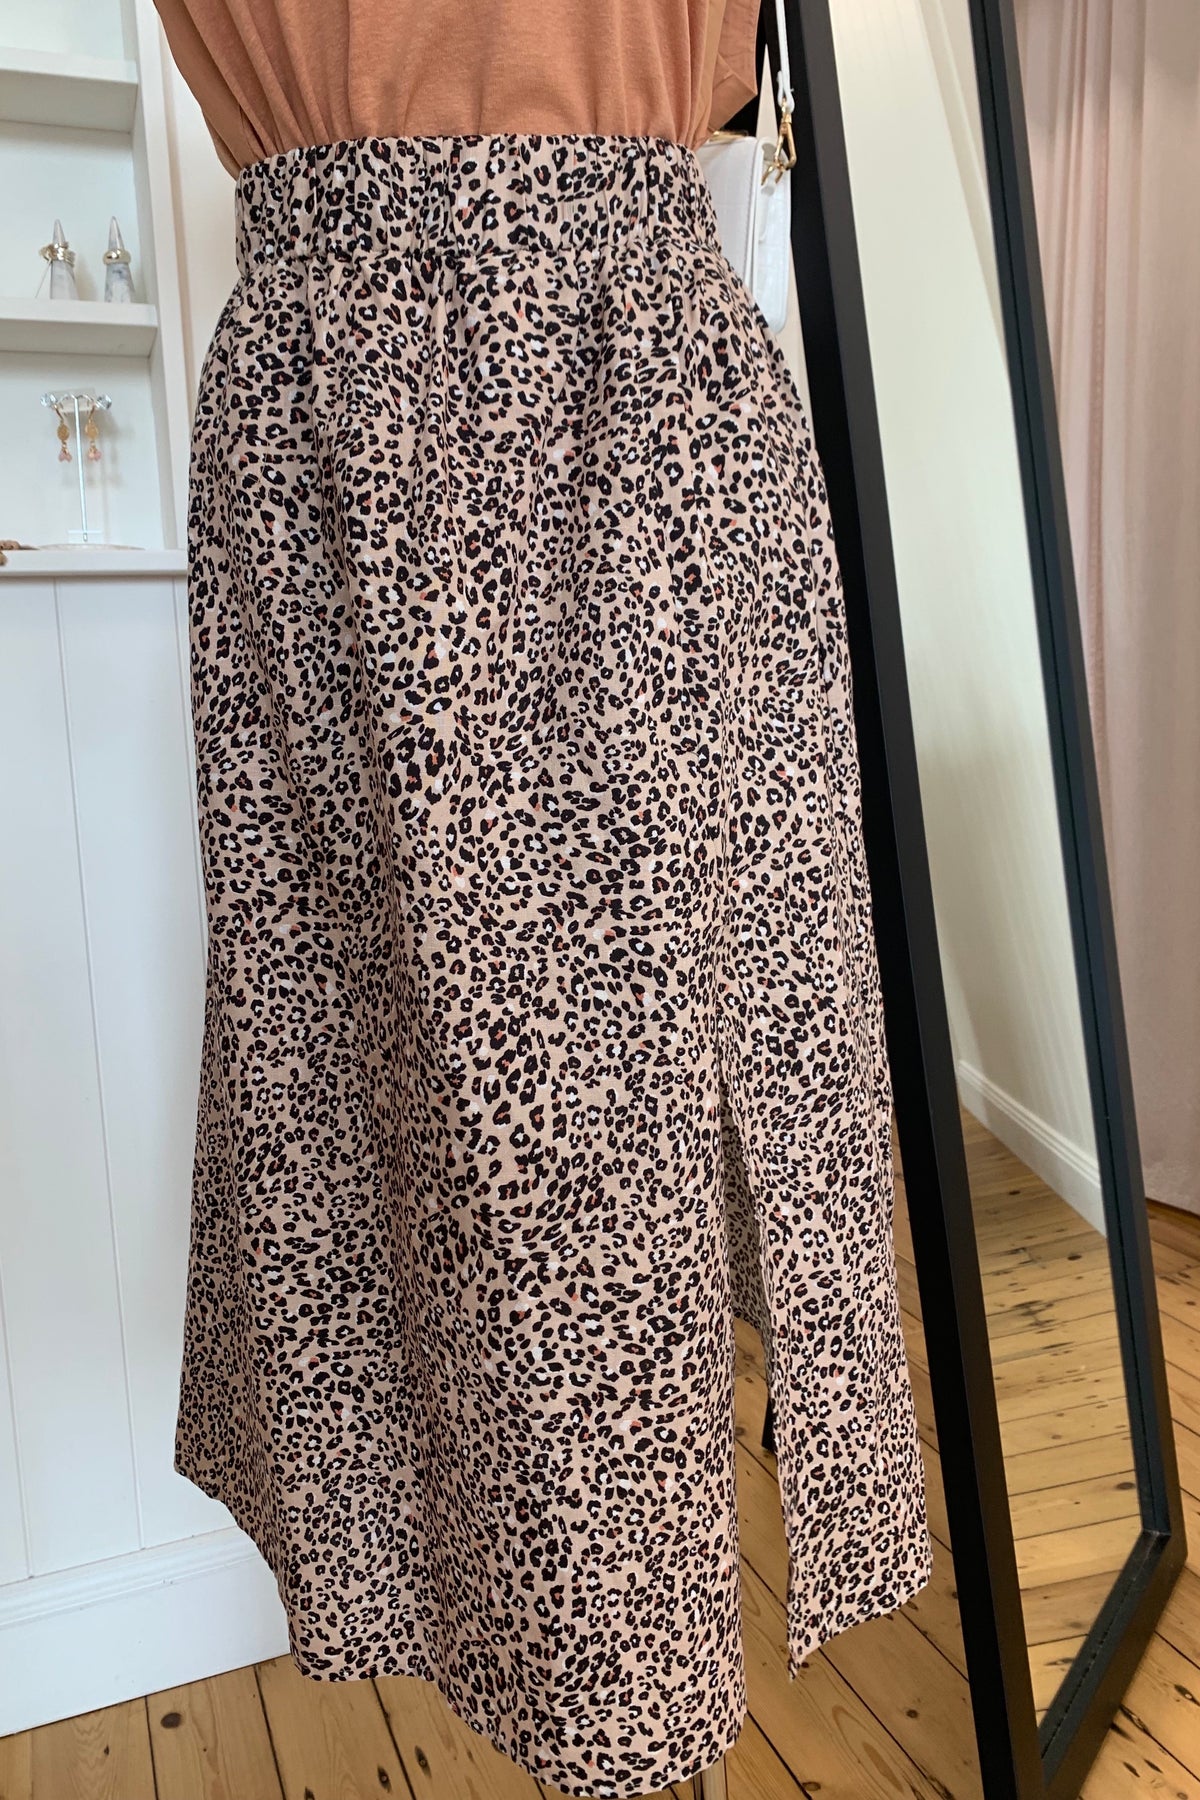 Chloe skirt - leopard